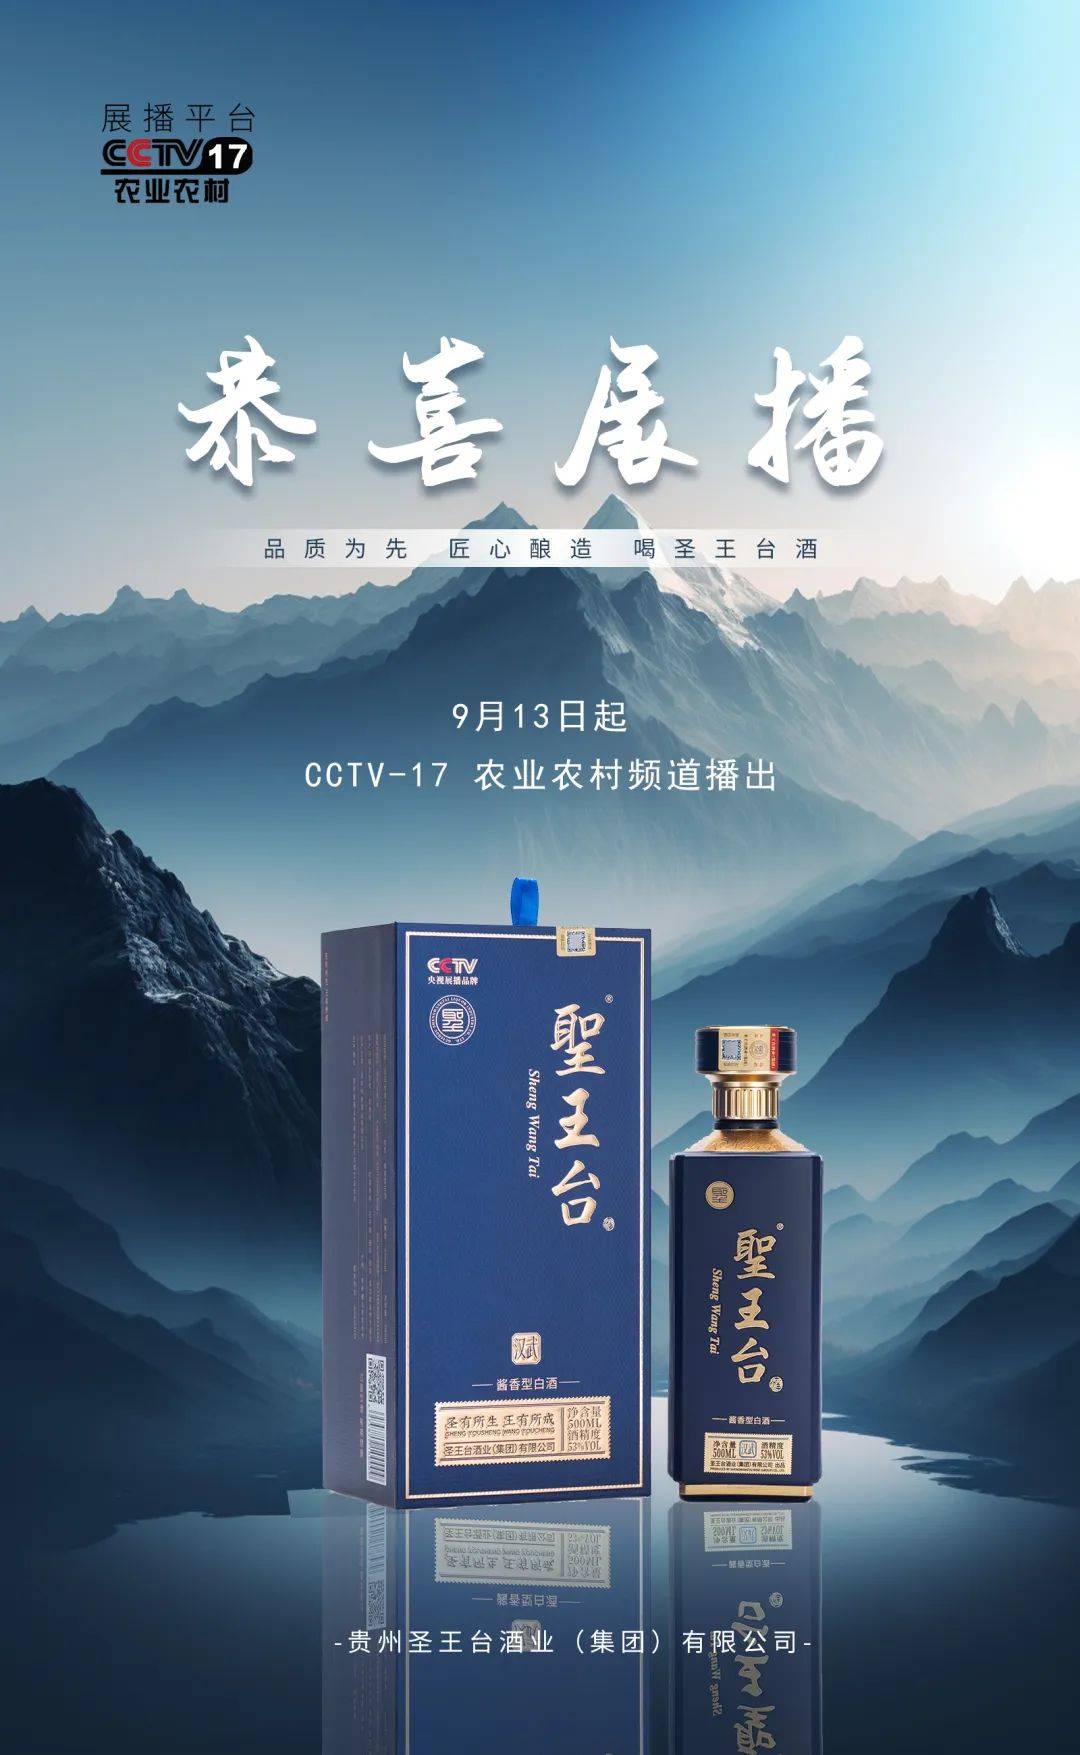 恭喜品牌“贵州圣王台酒”将荣登CCTV-17农业农村频道展播！